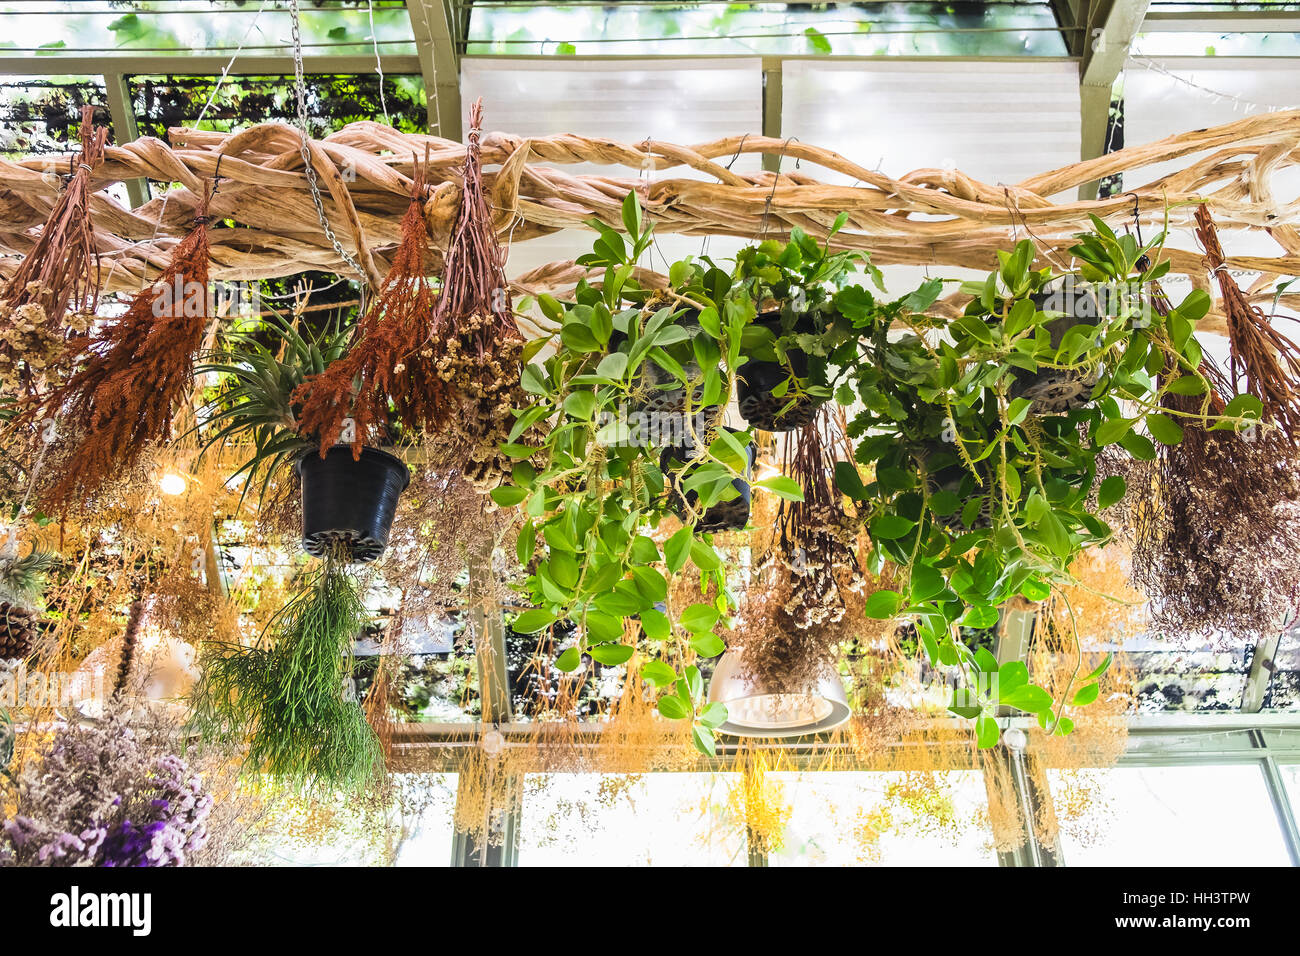 Divers plante et fleurs sèches accroché sur la décoration de la vigne Banque D'Images